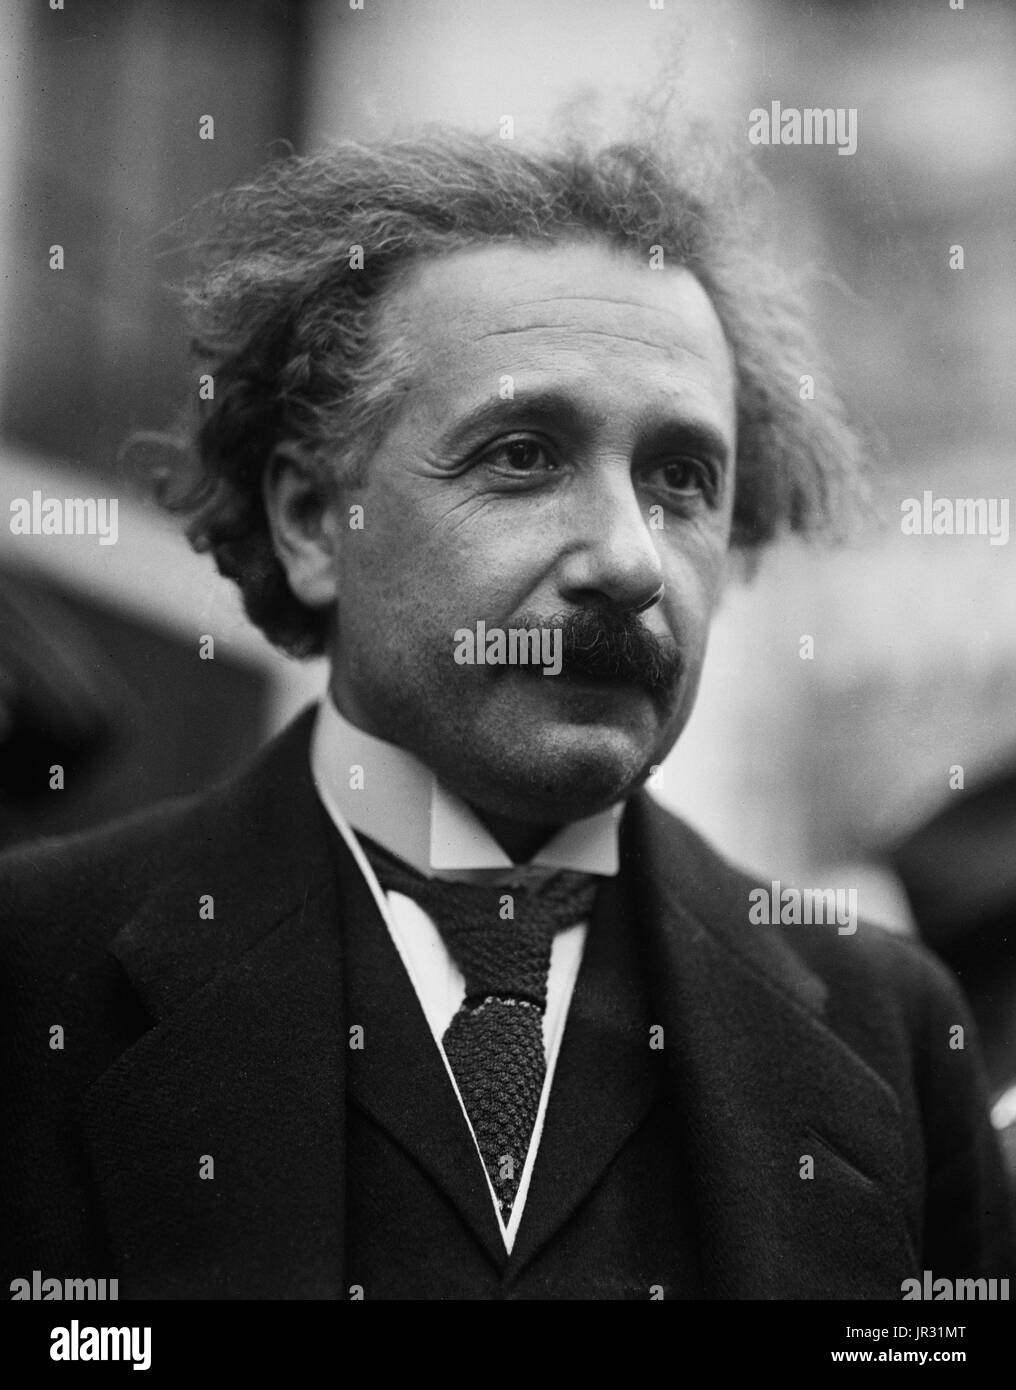 Albert Einstein (Marzo 14, 1879 - 18 Aprile 1955) era un tedesco-nato fisico teorico. Egli ha sviluppato la teoria della relatività generale, uno dei due pilastri della fisica moderna. Egli è meglio conosciuto nella cultura popolare per la sua massa-energia formula di equivalenza E=mc2. Egli ha ricevuto il 1921 Premio Nobel in fisica " per i suoi servizi alla fisica teorica e specialmente per la sua scoperta della legge dell'effetto fotoelettrico'. Egli è stato in visita negli Stati Uniti quando Hitler è arrivato al potere nel 1933, e di non andare di nuovo alla Germania. Egli si stabilì in America di diventare un cittadino nel 1940. Egli ha contribuito a avvisare il presidente Roosevelt Foto Stock